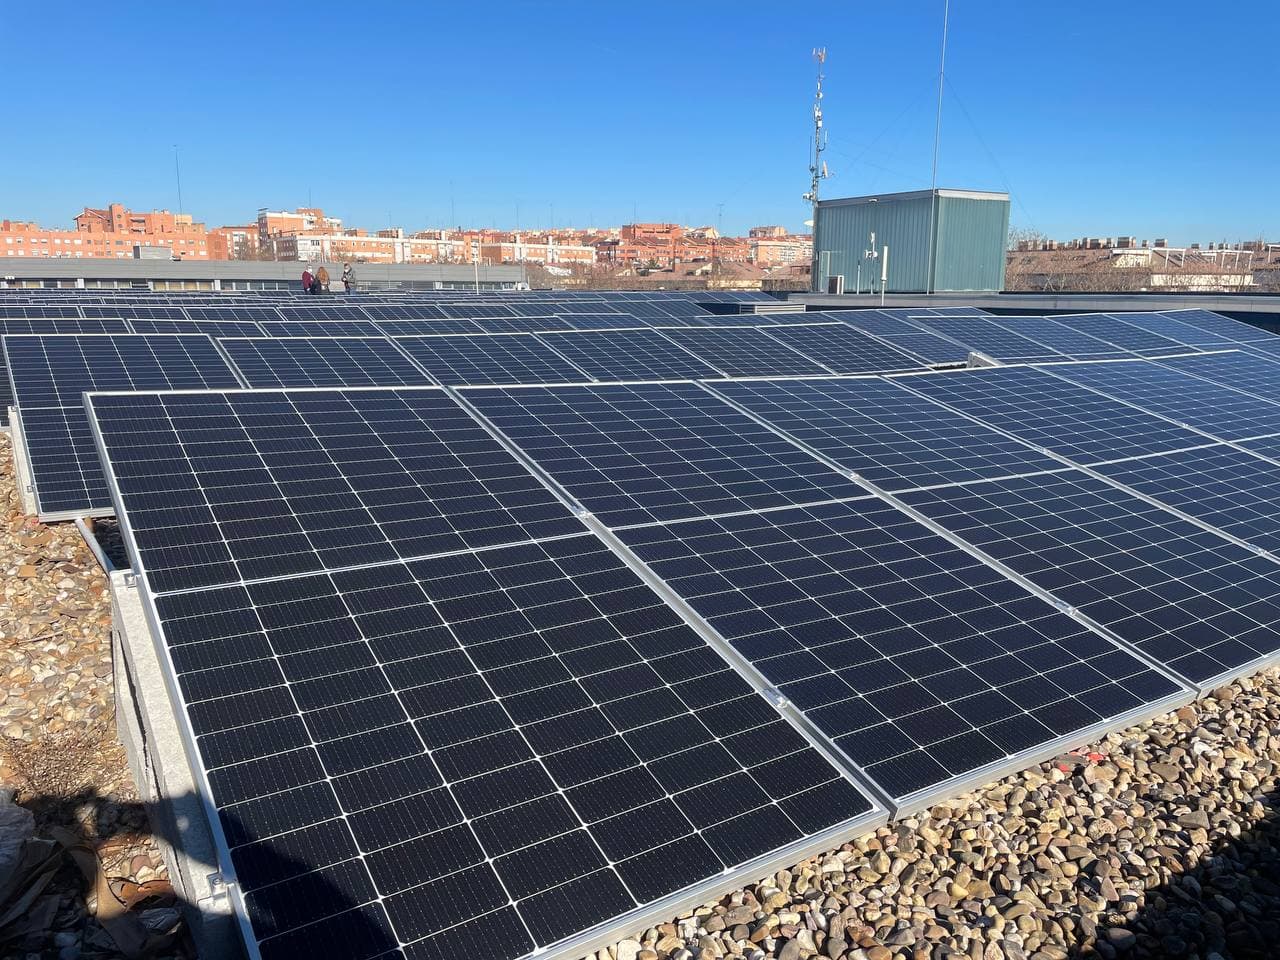 Las placas solares en las cubiertas son la base para desplegar de las comunidades energéticas locales